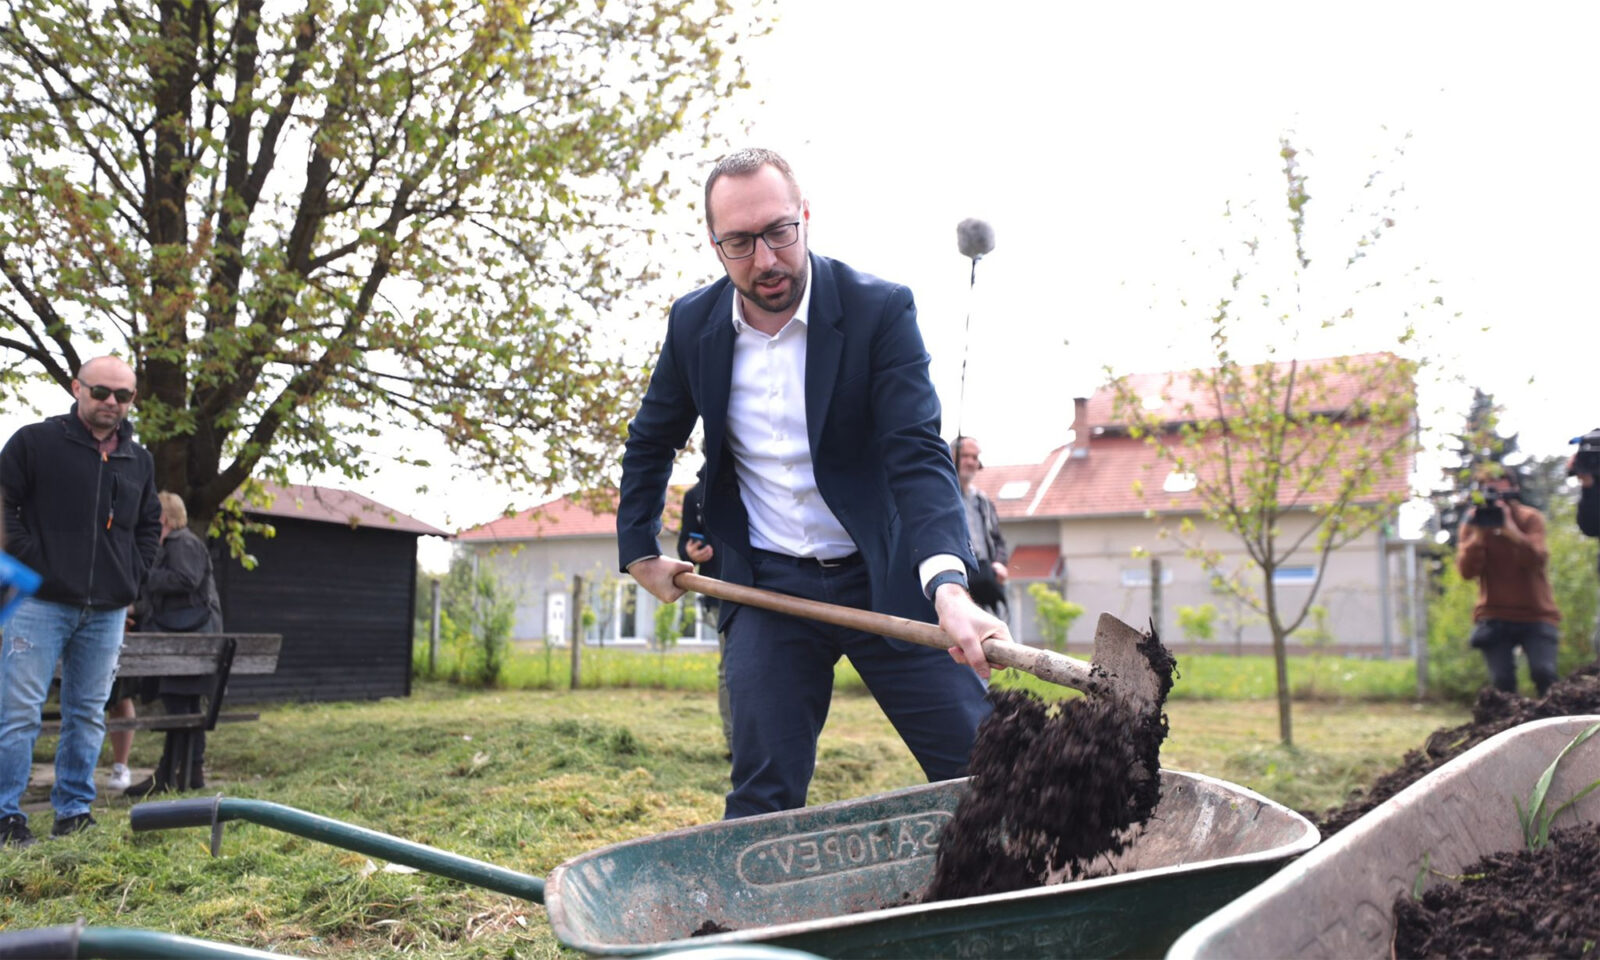 Zagrebački gradonačelnik Tomislav Tomašević najavio je podjelu drva za ogrjev energetski siromašnim kućanstvima.